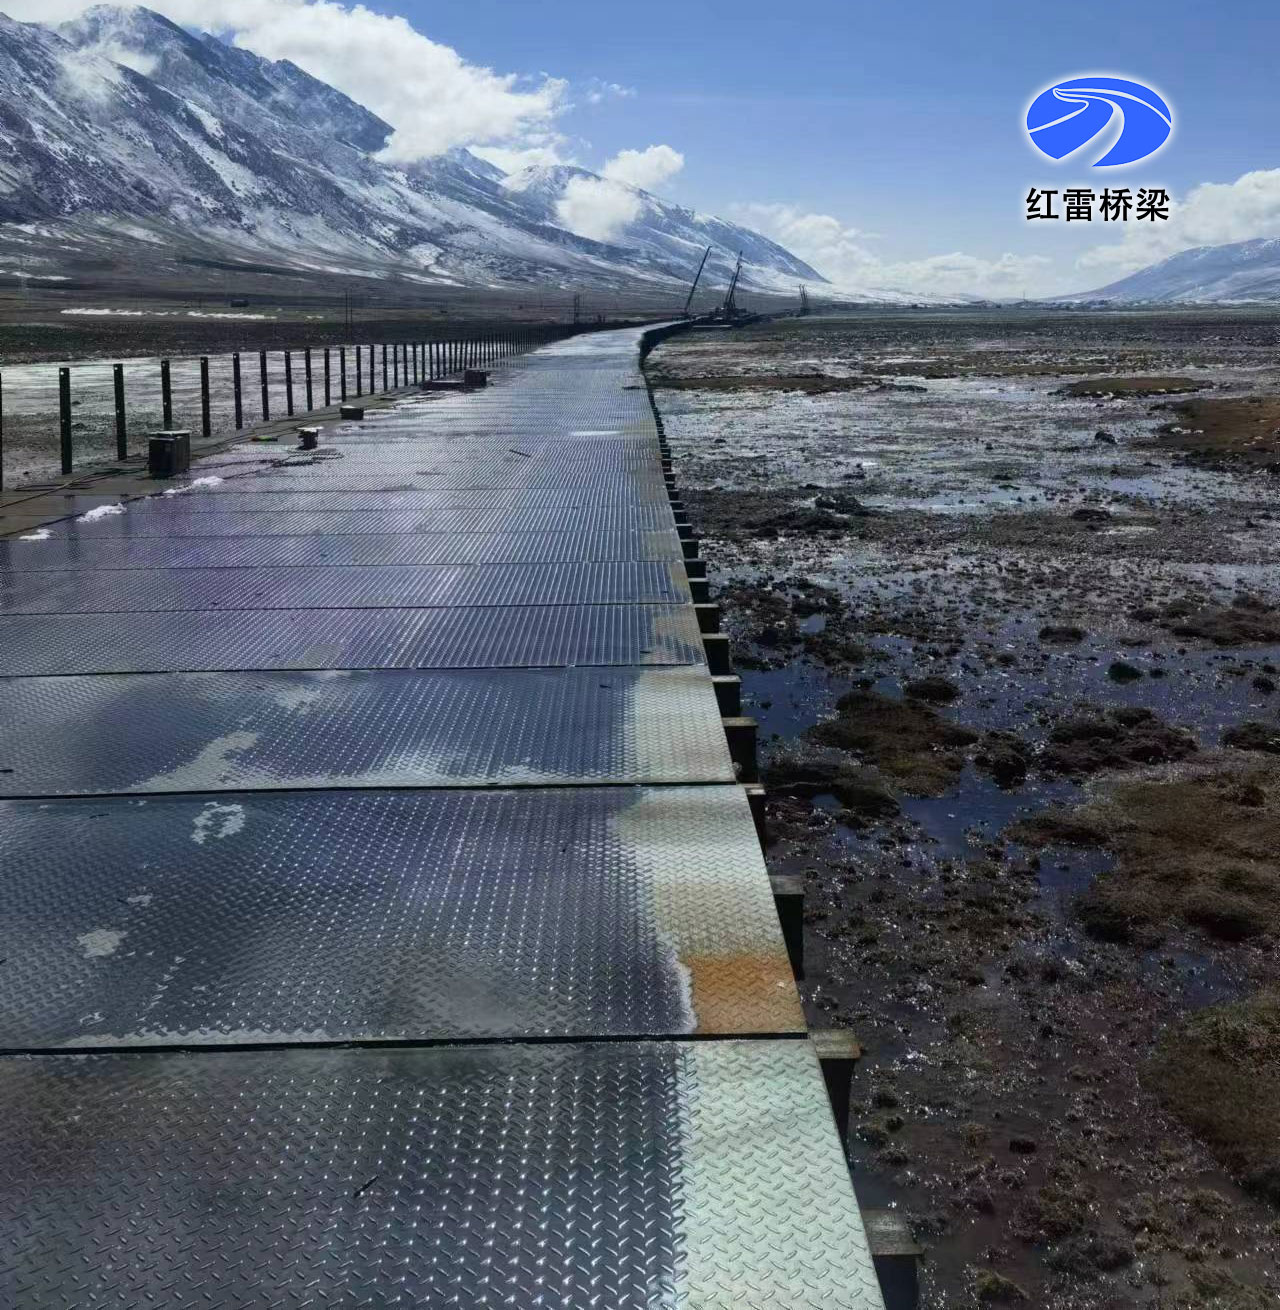 川藏鐵路雅安至昌都段無量河濕地公園范圍伴橋施工便道